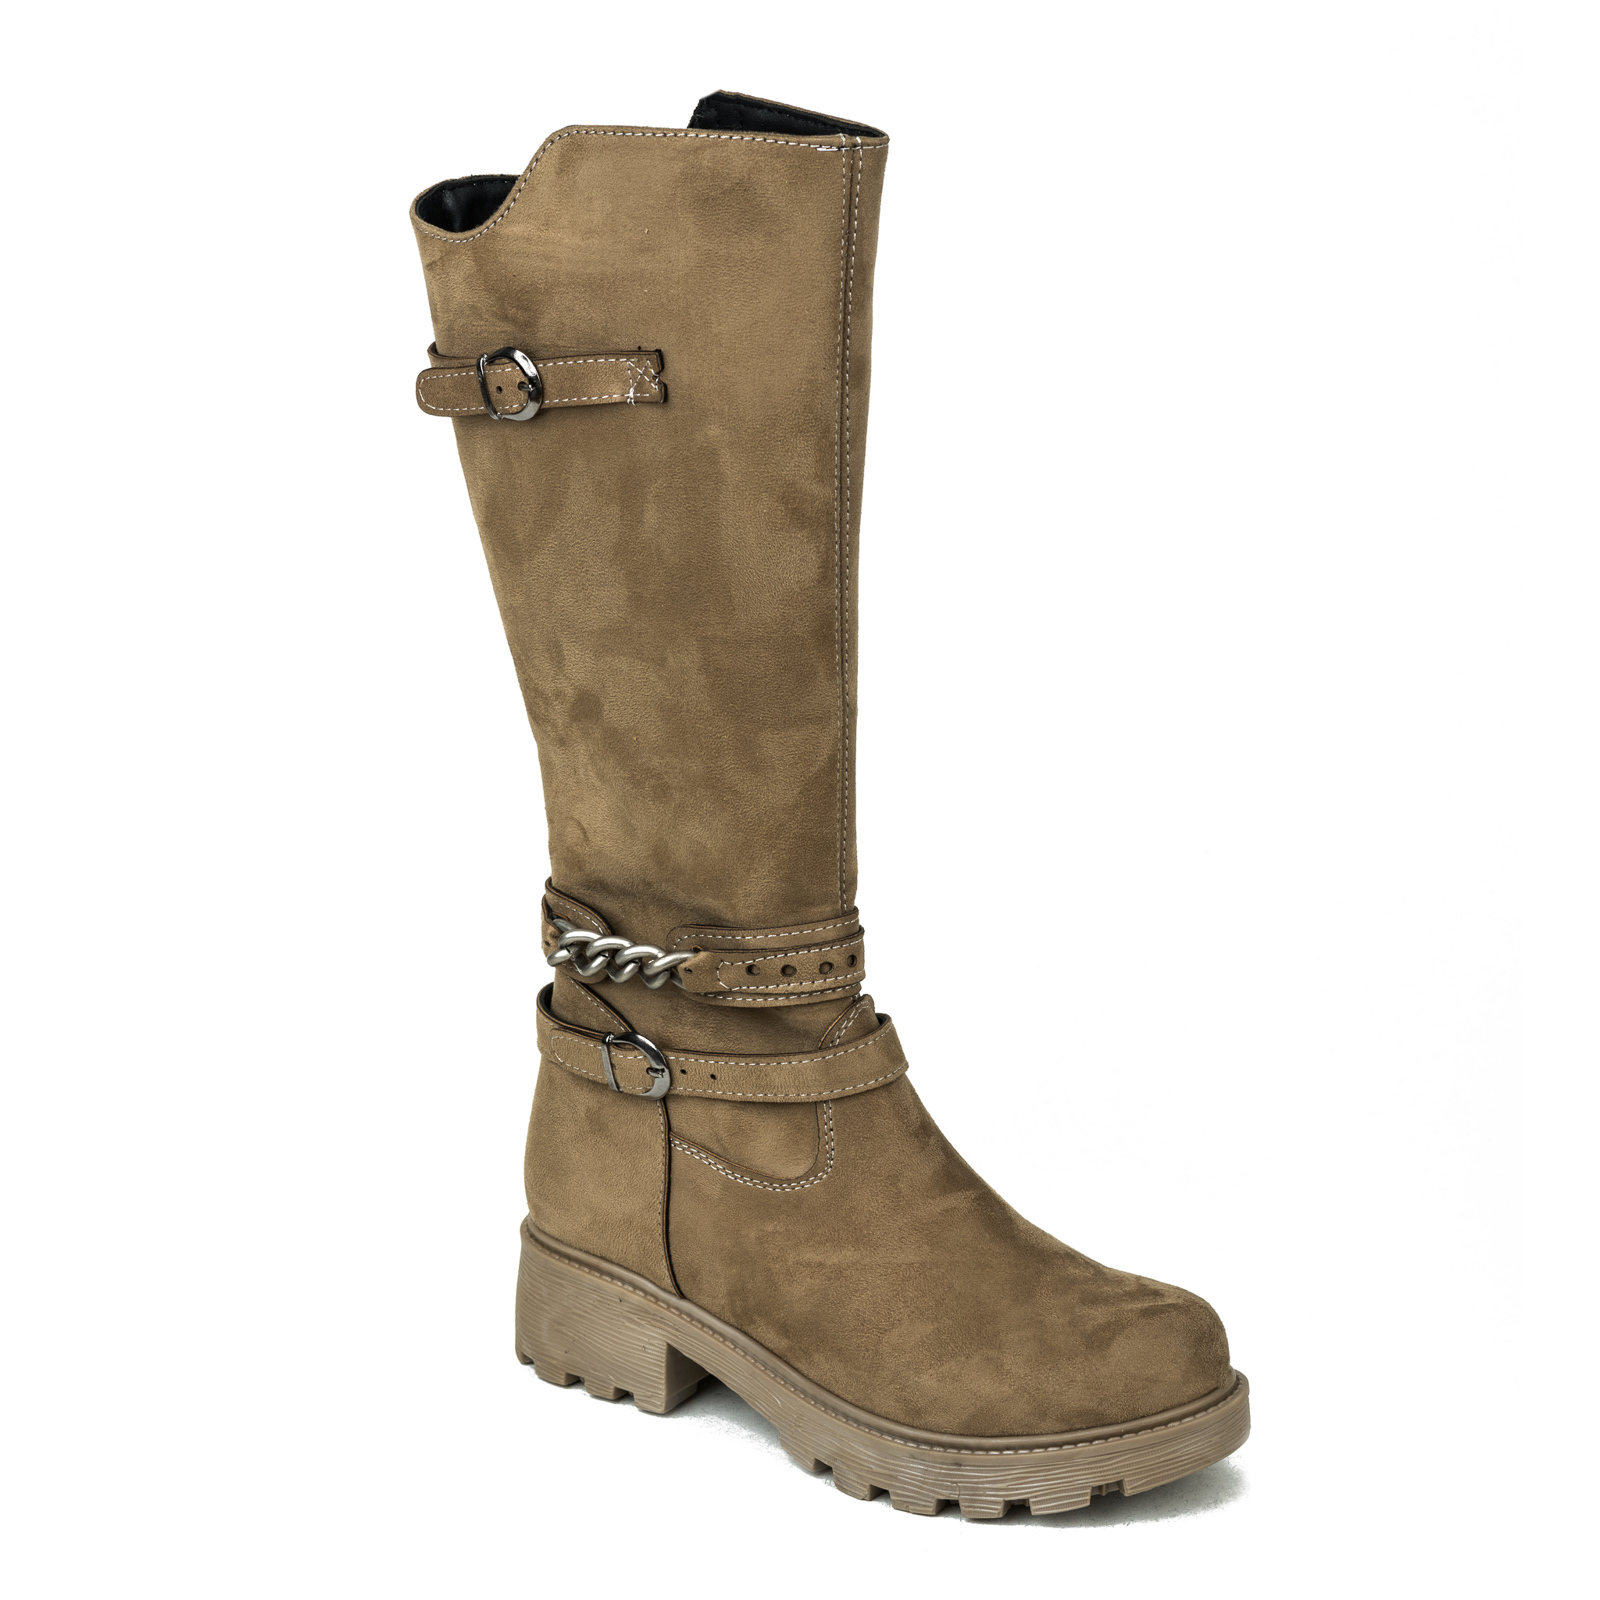 Women boots B130 - BEIGE